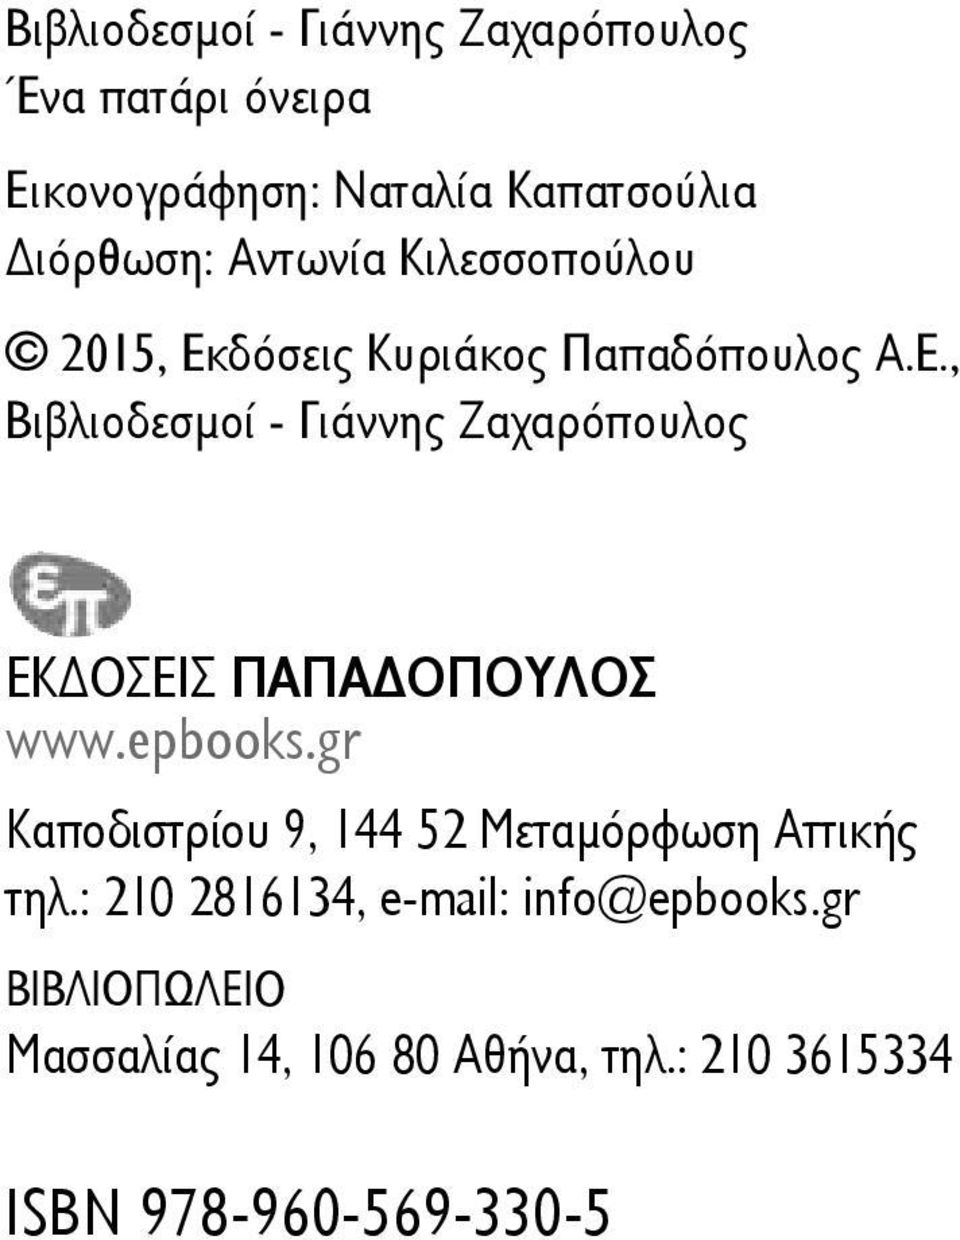 , Βιβλιοδεσμοί - Γιάννης Ζαχαρόπουλος EKΔΟΣΕΙΣ ΠΑΠΑΔΟΠΟΥΛΟΣ www.epbooks.